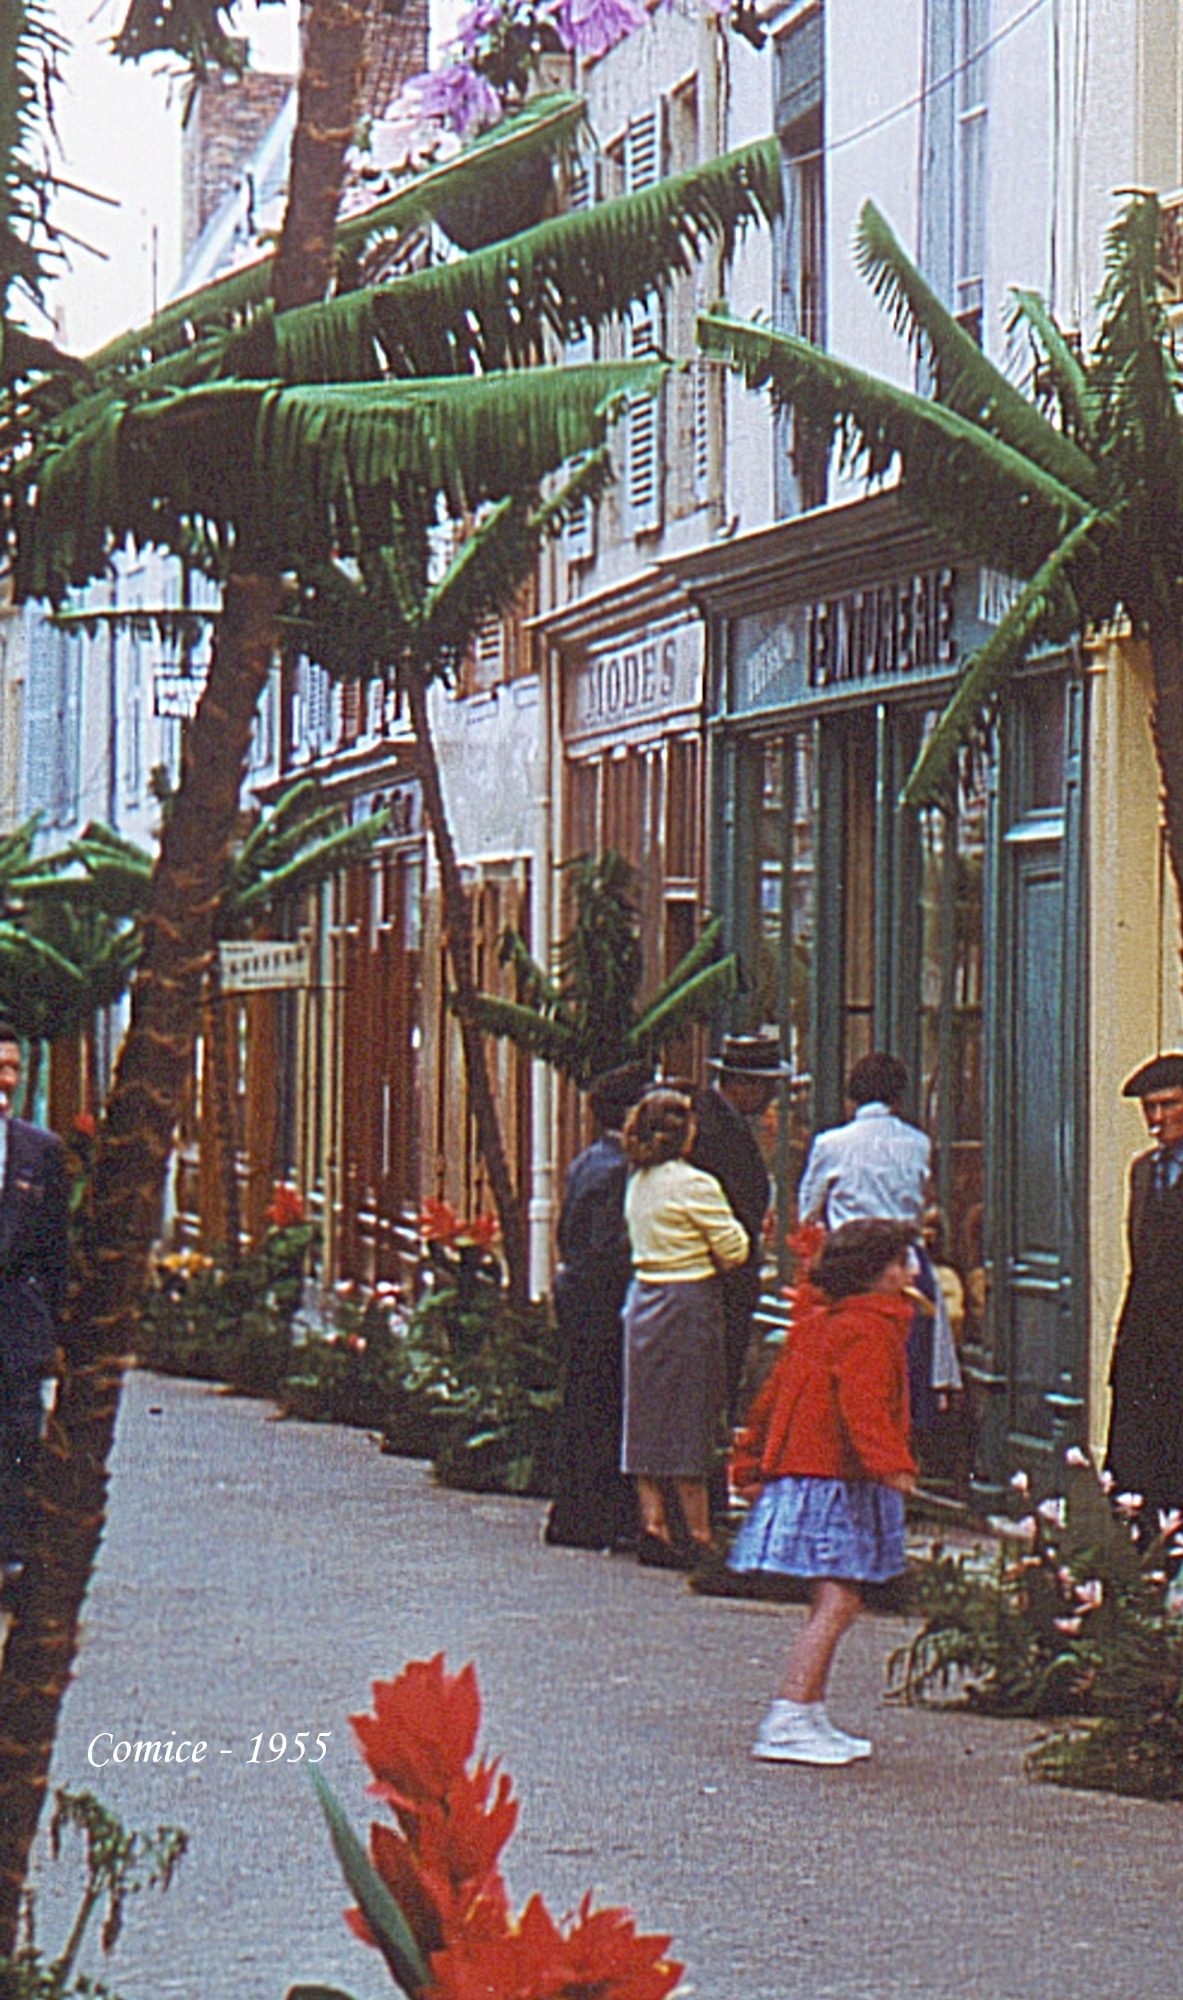 Rue des changes en 1955 durant le comice - 28160 BROU